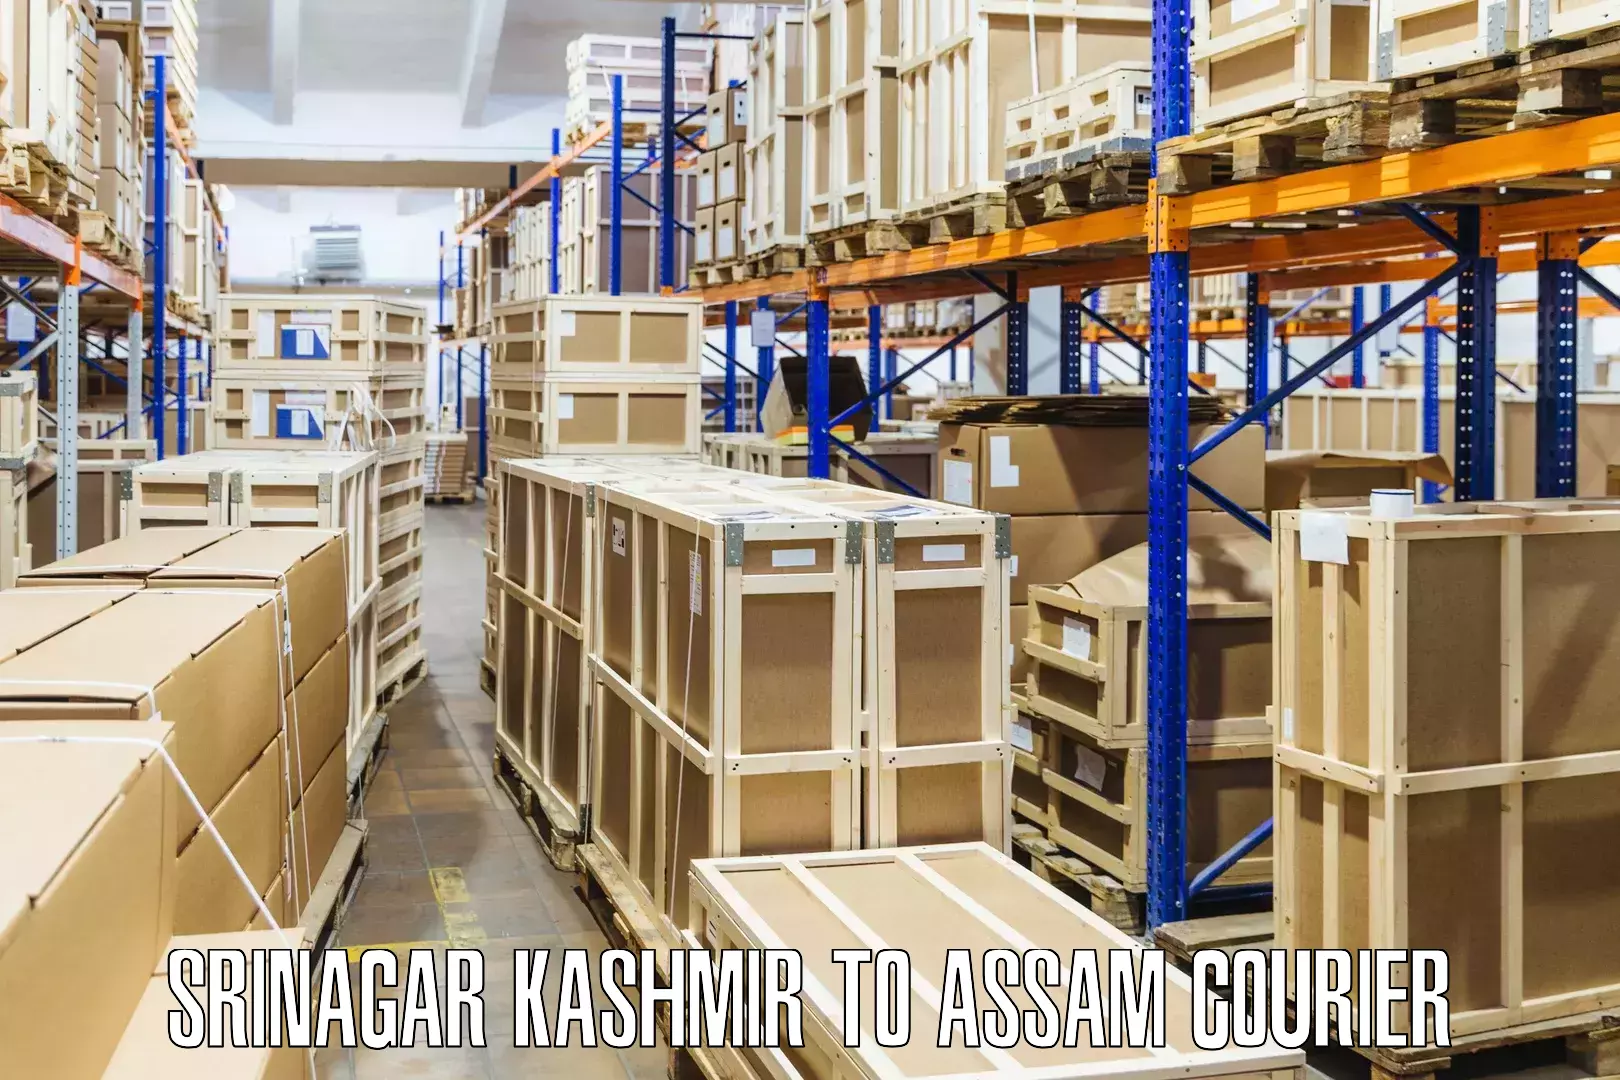 24-hour courier service Srinagar Kashmir to Assam